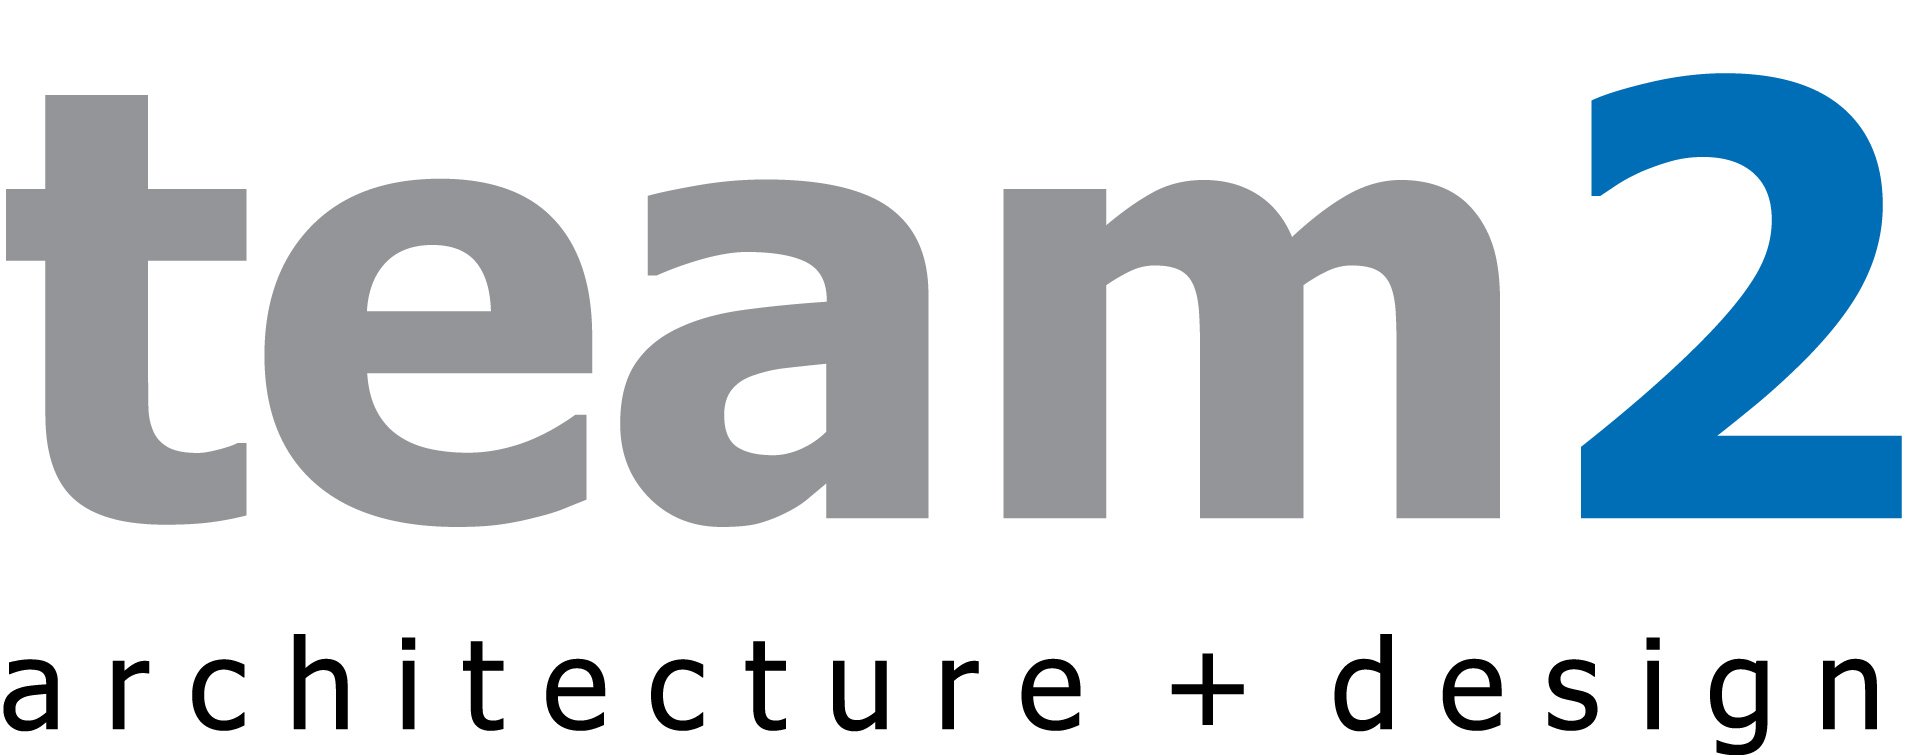 Team2 Architecture + Design Logo